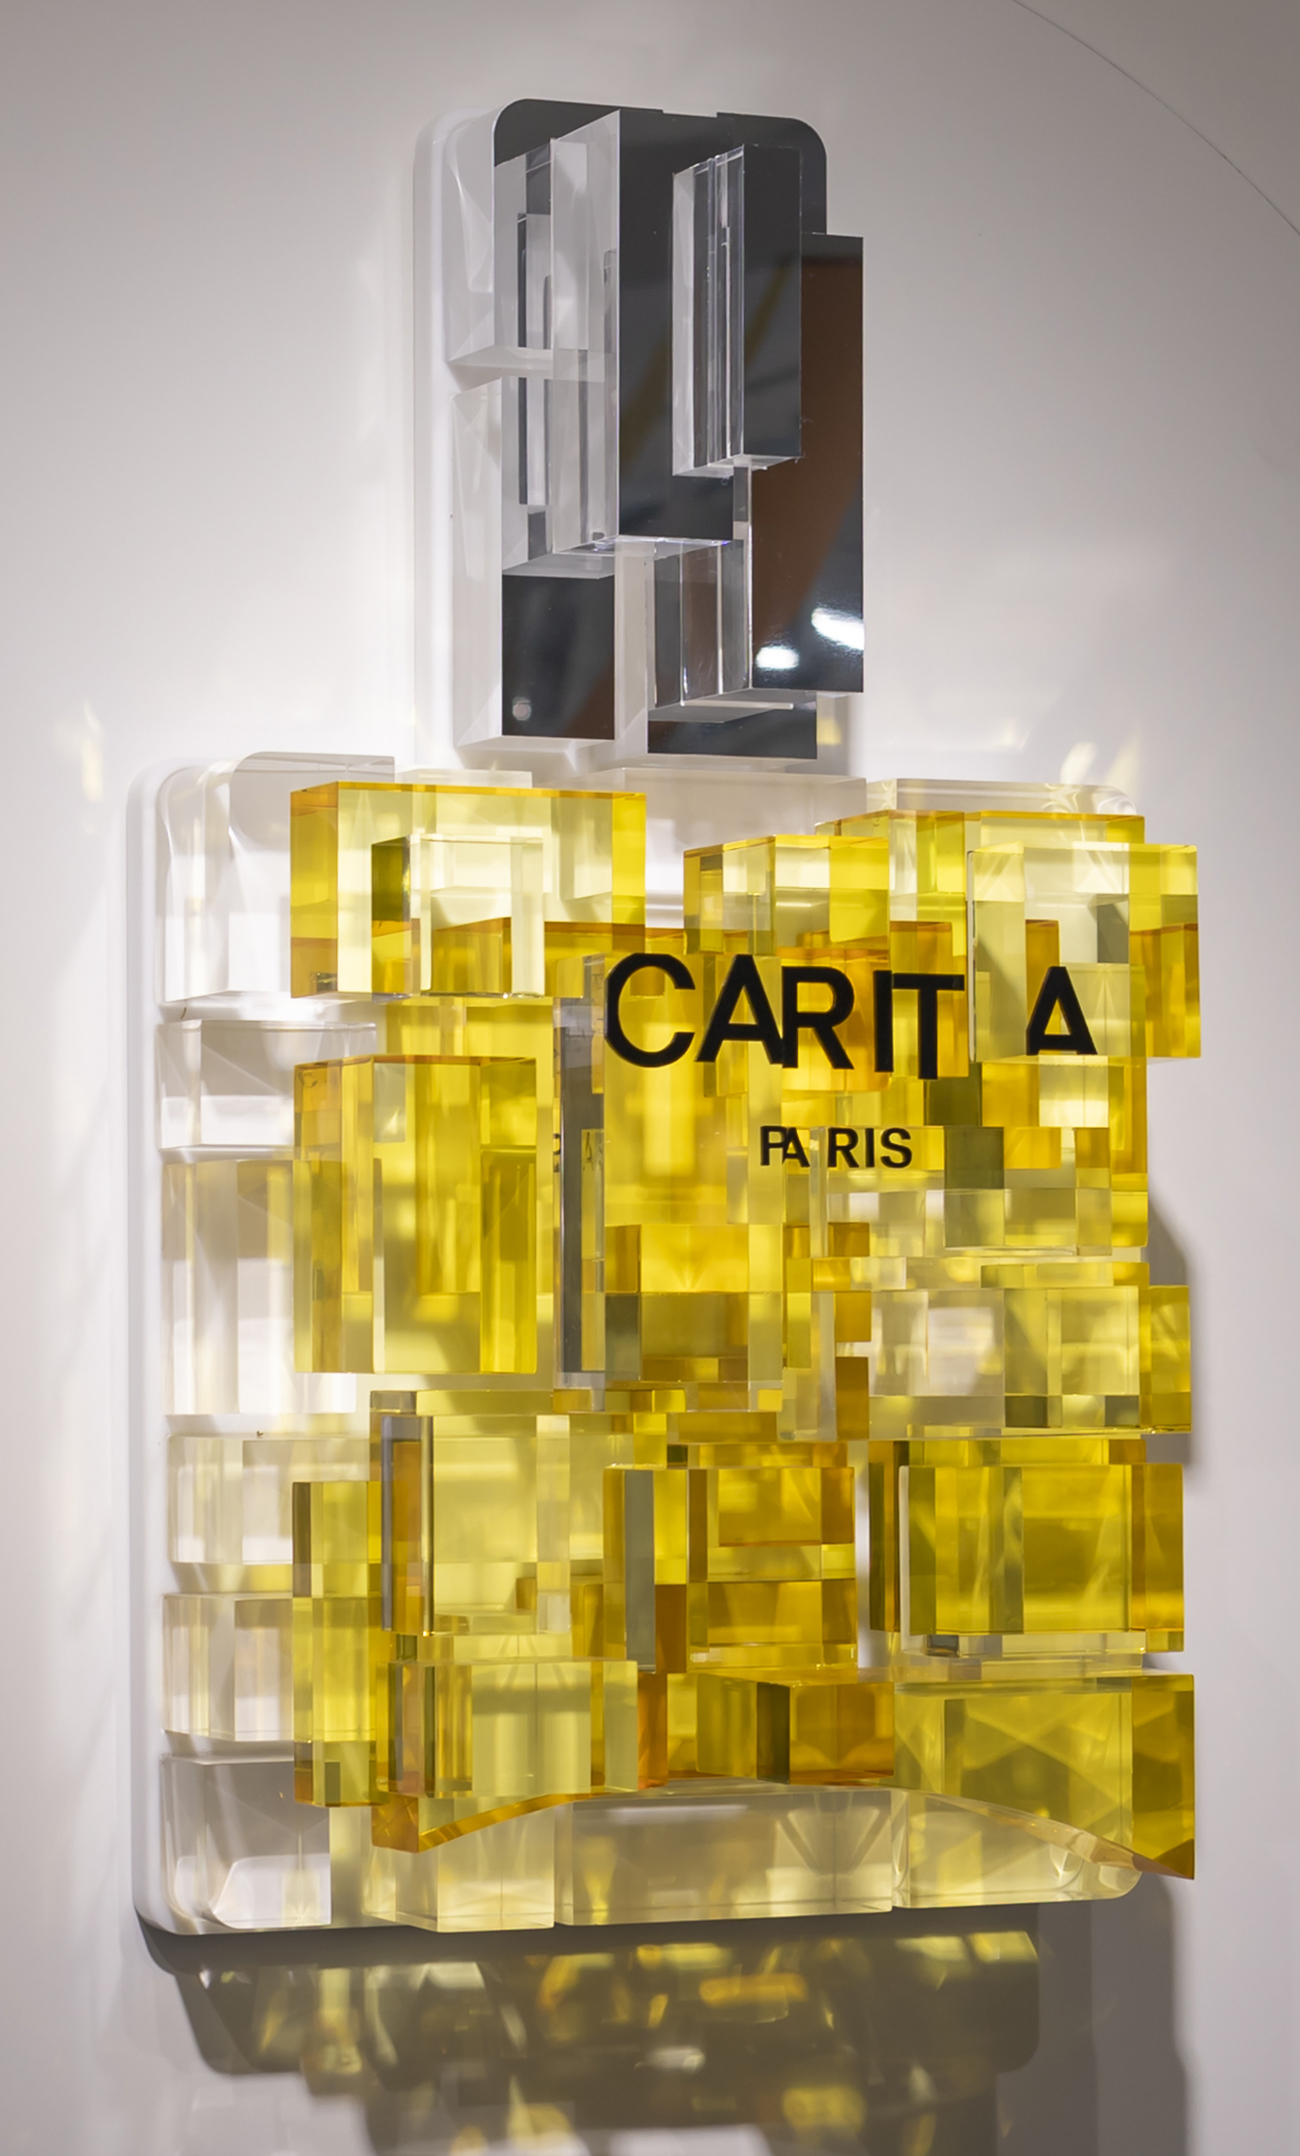 Carita studio design Maud Vantours DA scenography Paris